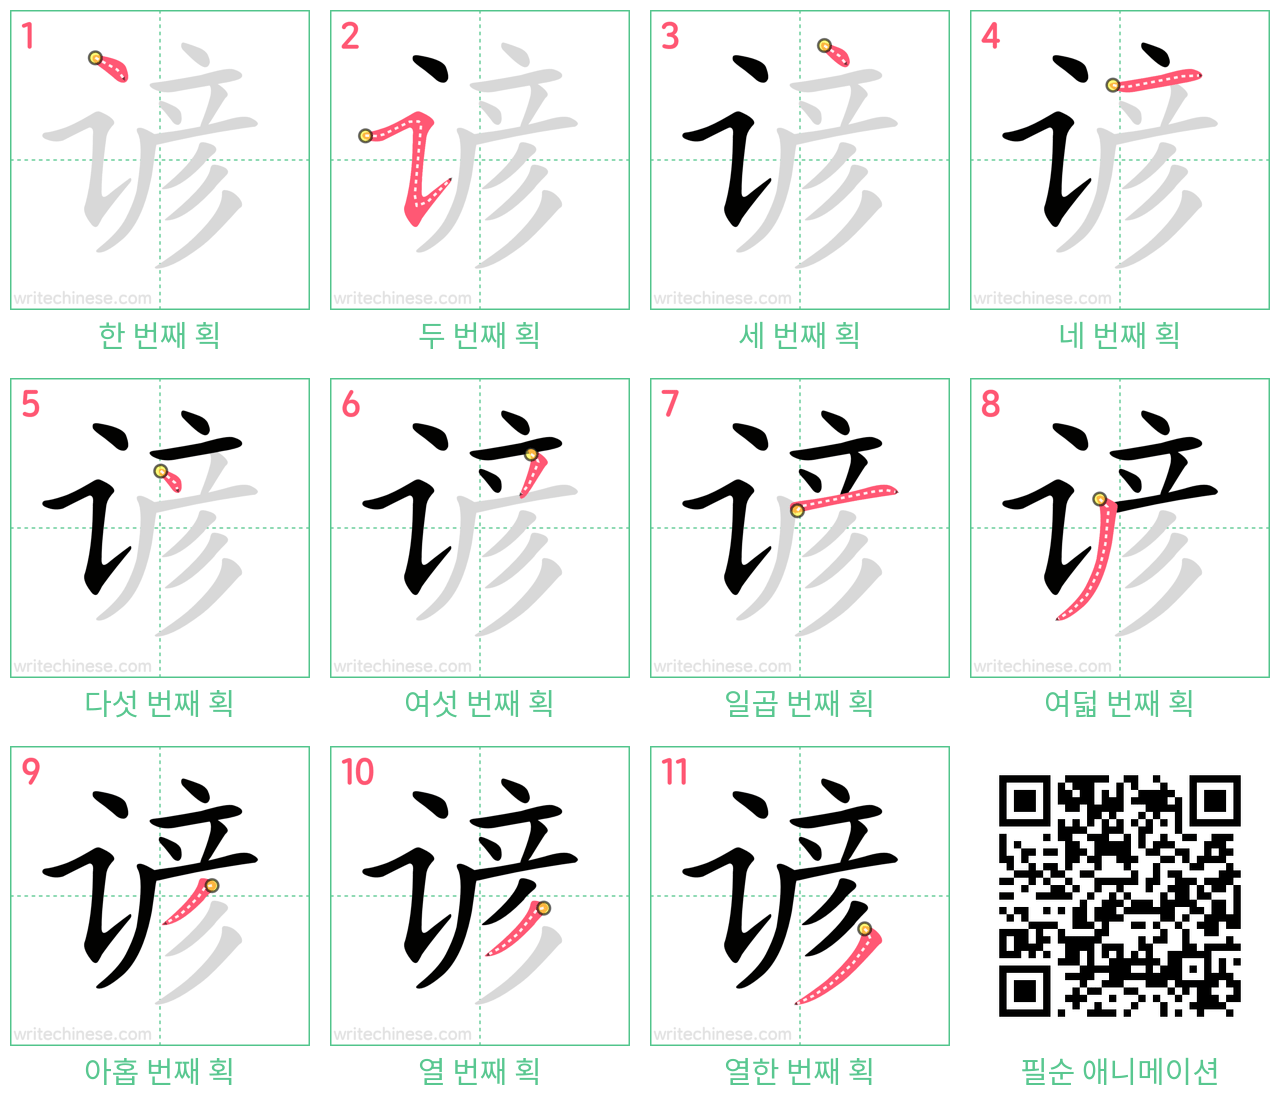 谚 step-by-step stroke order diagrams